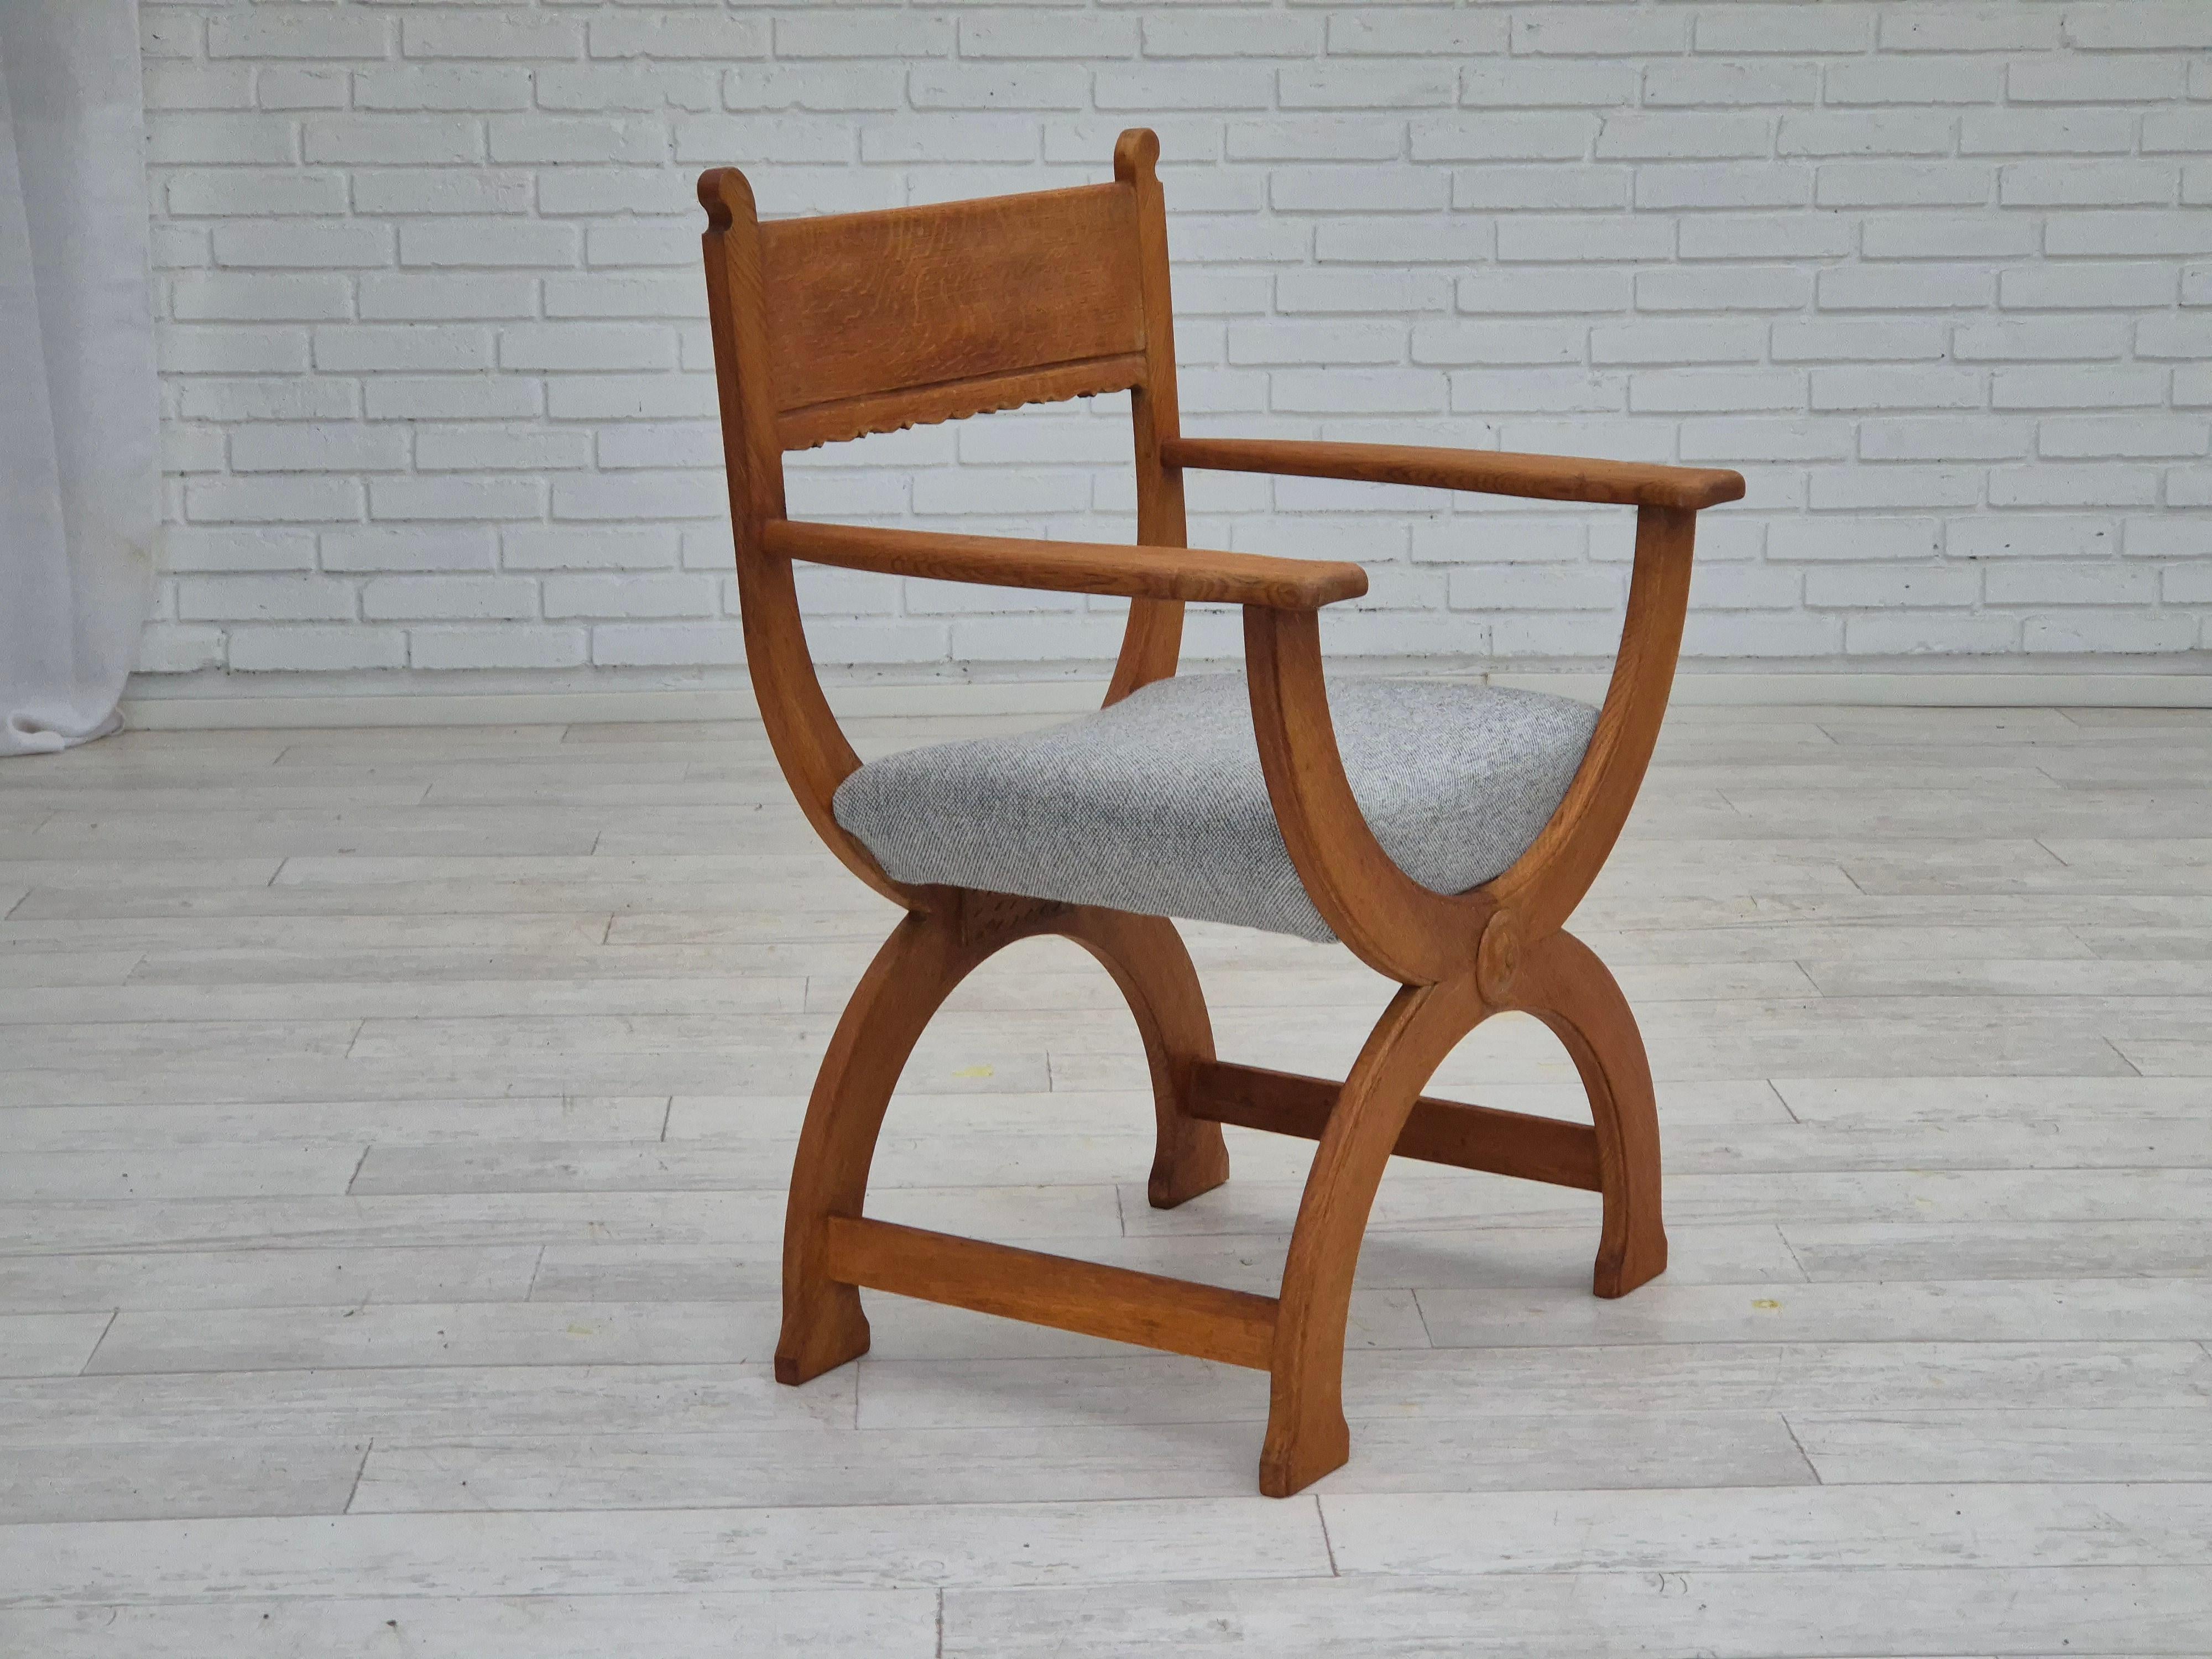 Fauteuil danois des années 1960 en chêne massif ciré. Nouvellement retapissé dans un meuble de qualité KVADRAT en laine Hallingdal. Bois renouvelé. Fabriqué par un fabricant de meubles danois dans les années 1960. Rembourré par un artisan.